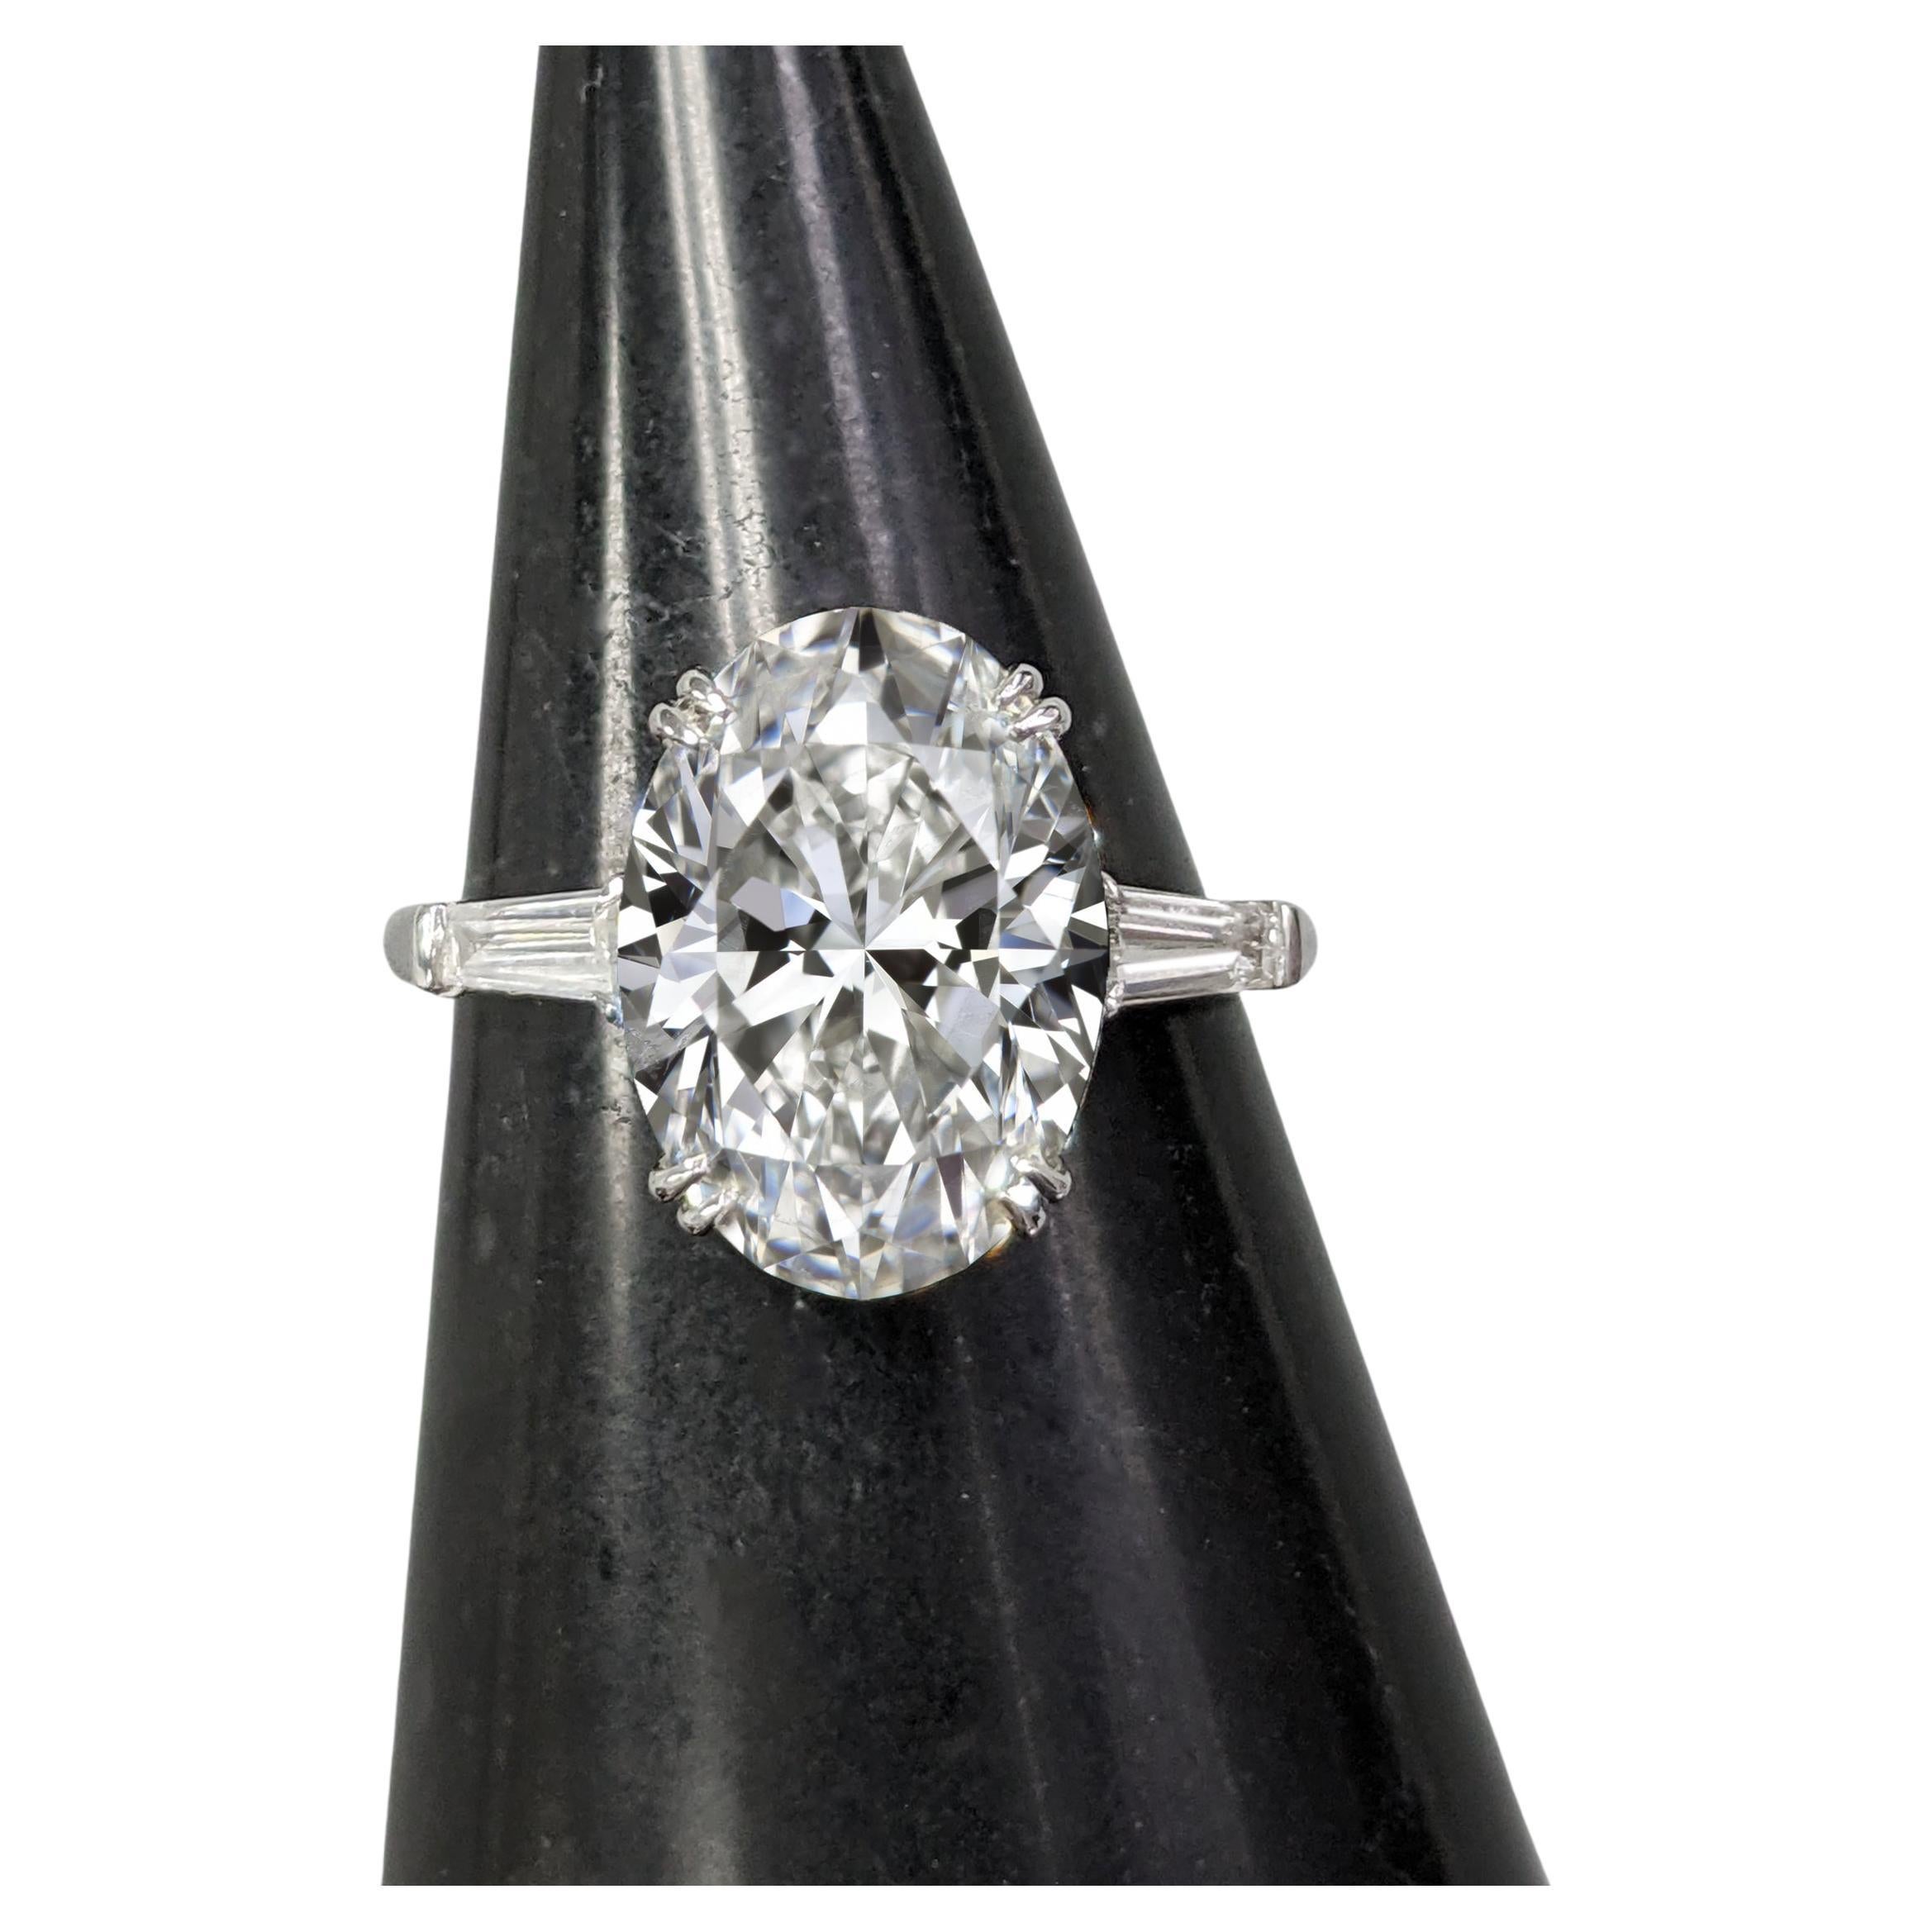 Atemberaubender 5-Karat-Diamantring, bei dem der Hauptstein ein ideales Verhältnis aufweist, das sein anmutiges Aussehen unterstreicht. 

Dieser bemerkenswerte Edelstein ist mit einer exzellenten Politur und einer sehr guten Symmetrie versehen, die